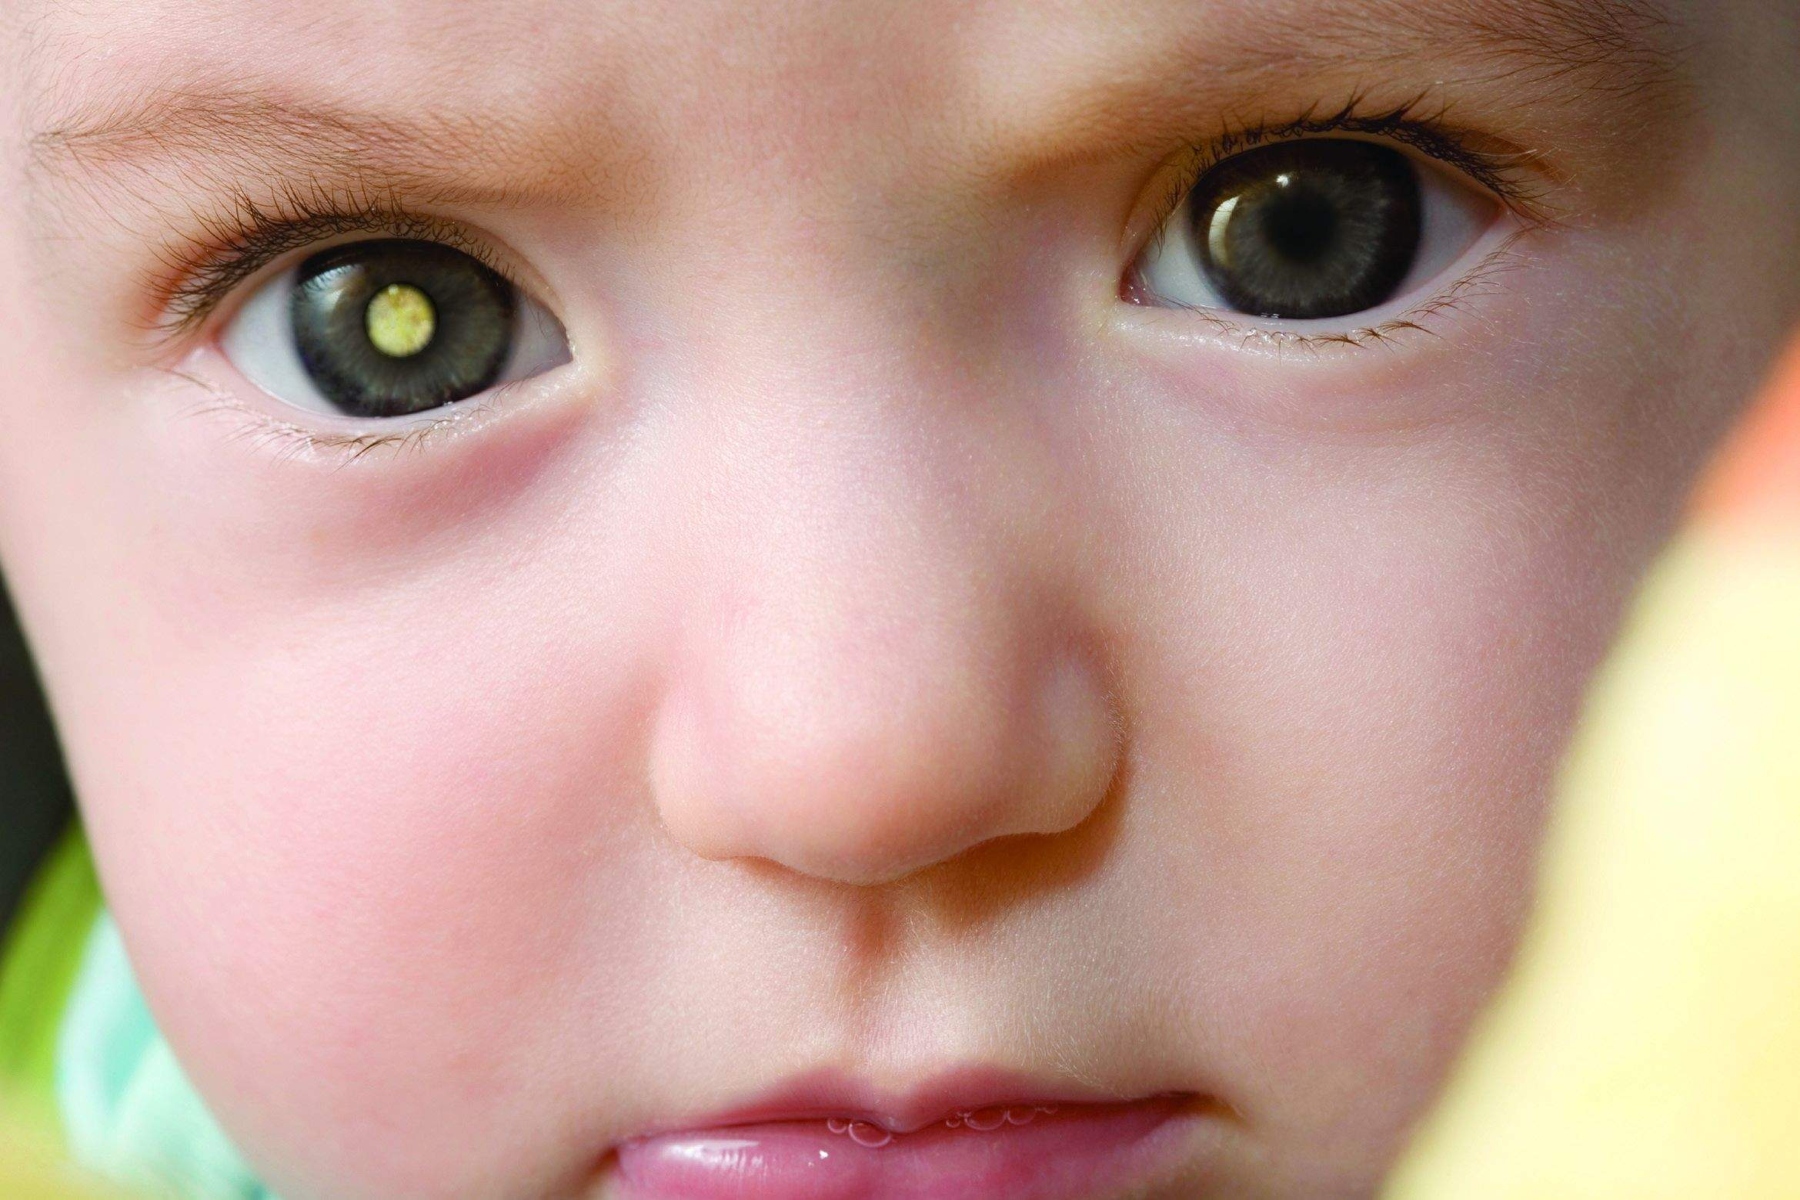 Μάτια καρκίνος: Τι πρέπει να γνωρίζουμε για τον παιδικό καρκίνο ματιών;